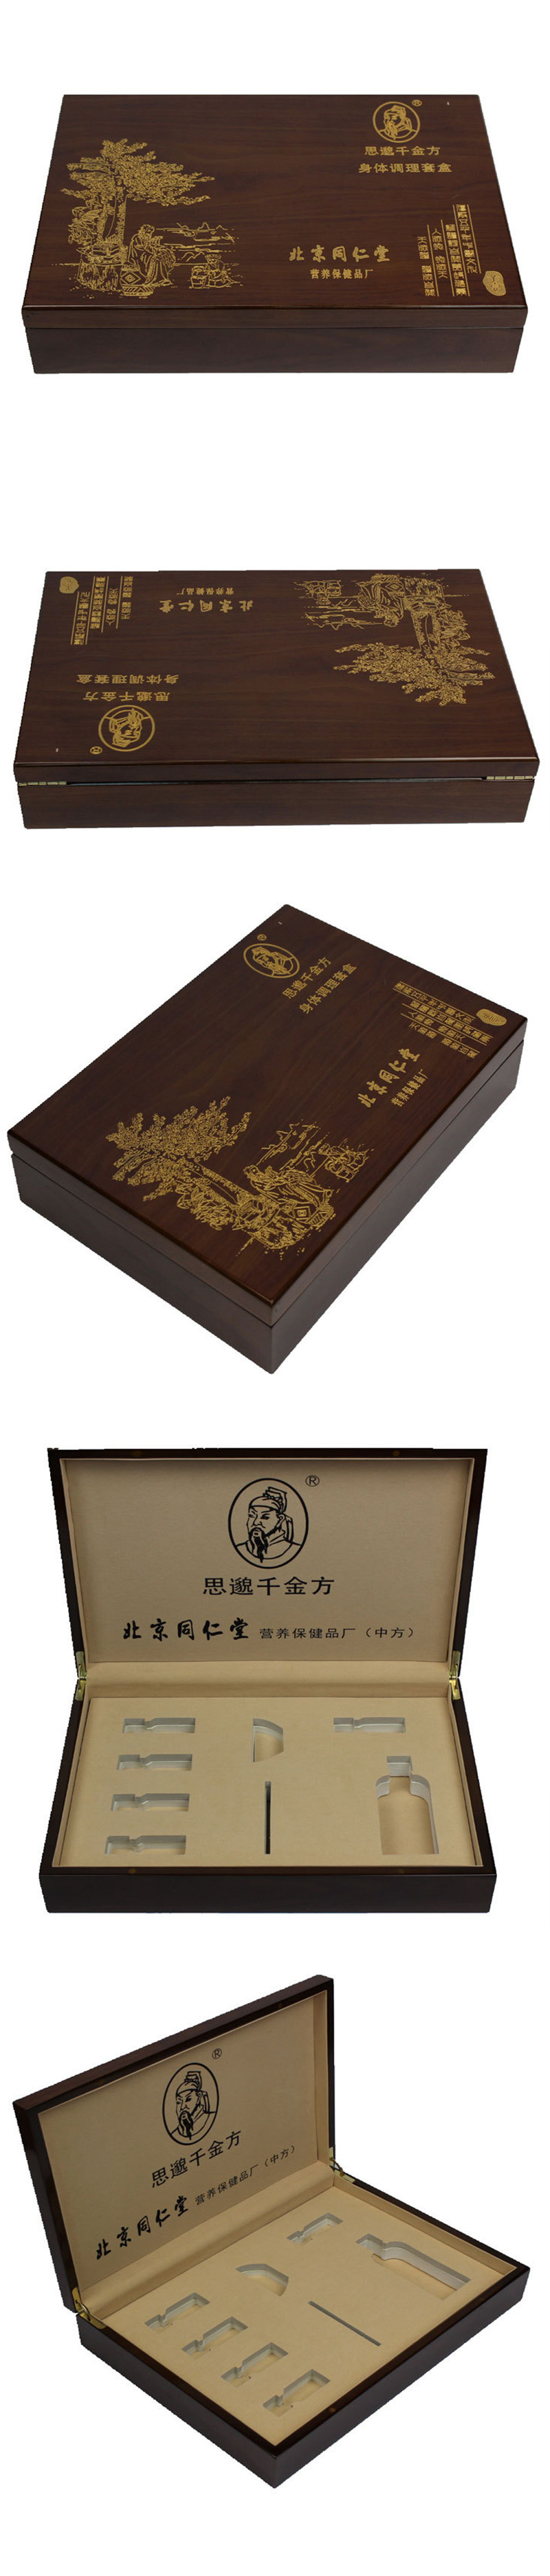 同仁堂礼品盒木盒包装设计